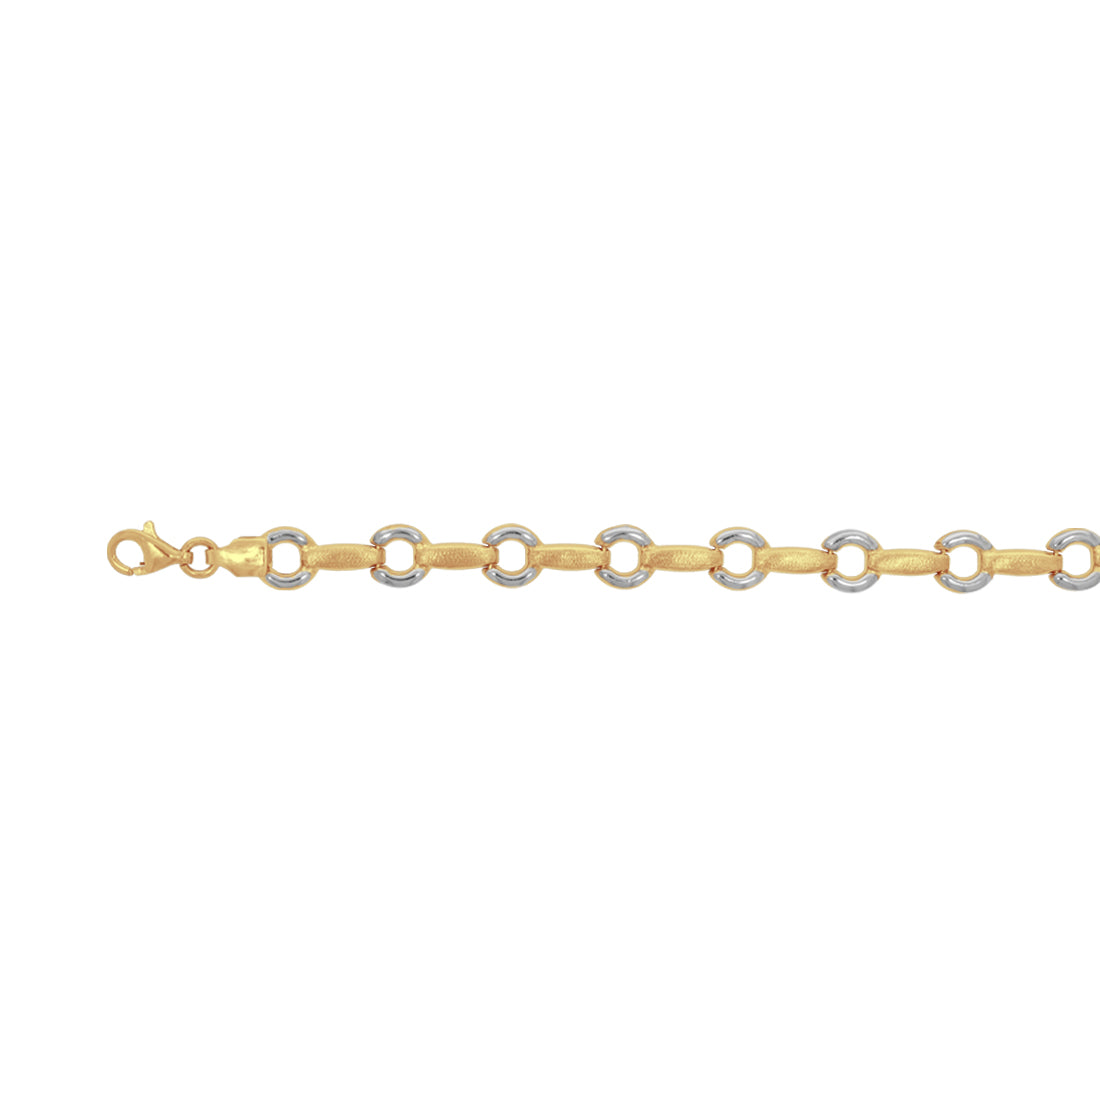 Pulsera Oro 10k, con Eslabón Círculo y barritas Lisas, Largo 18 cm, Ancho 7 mm, Oro 10k